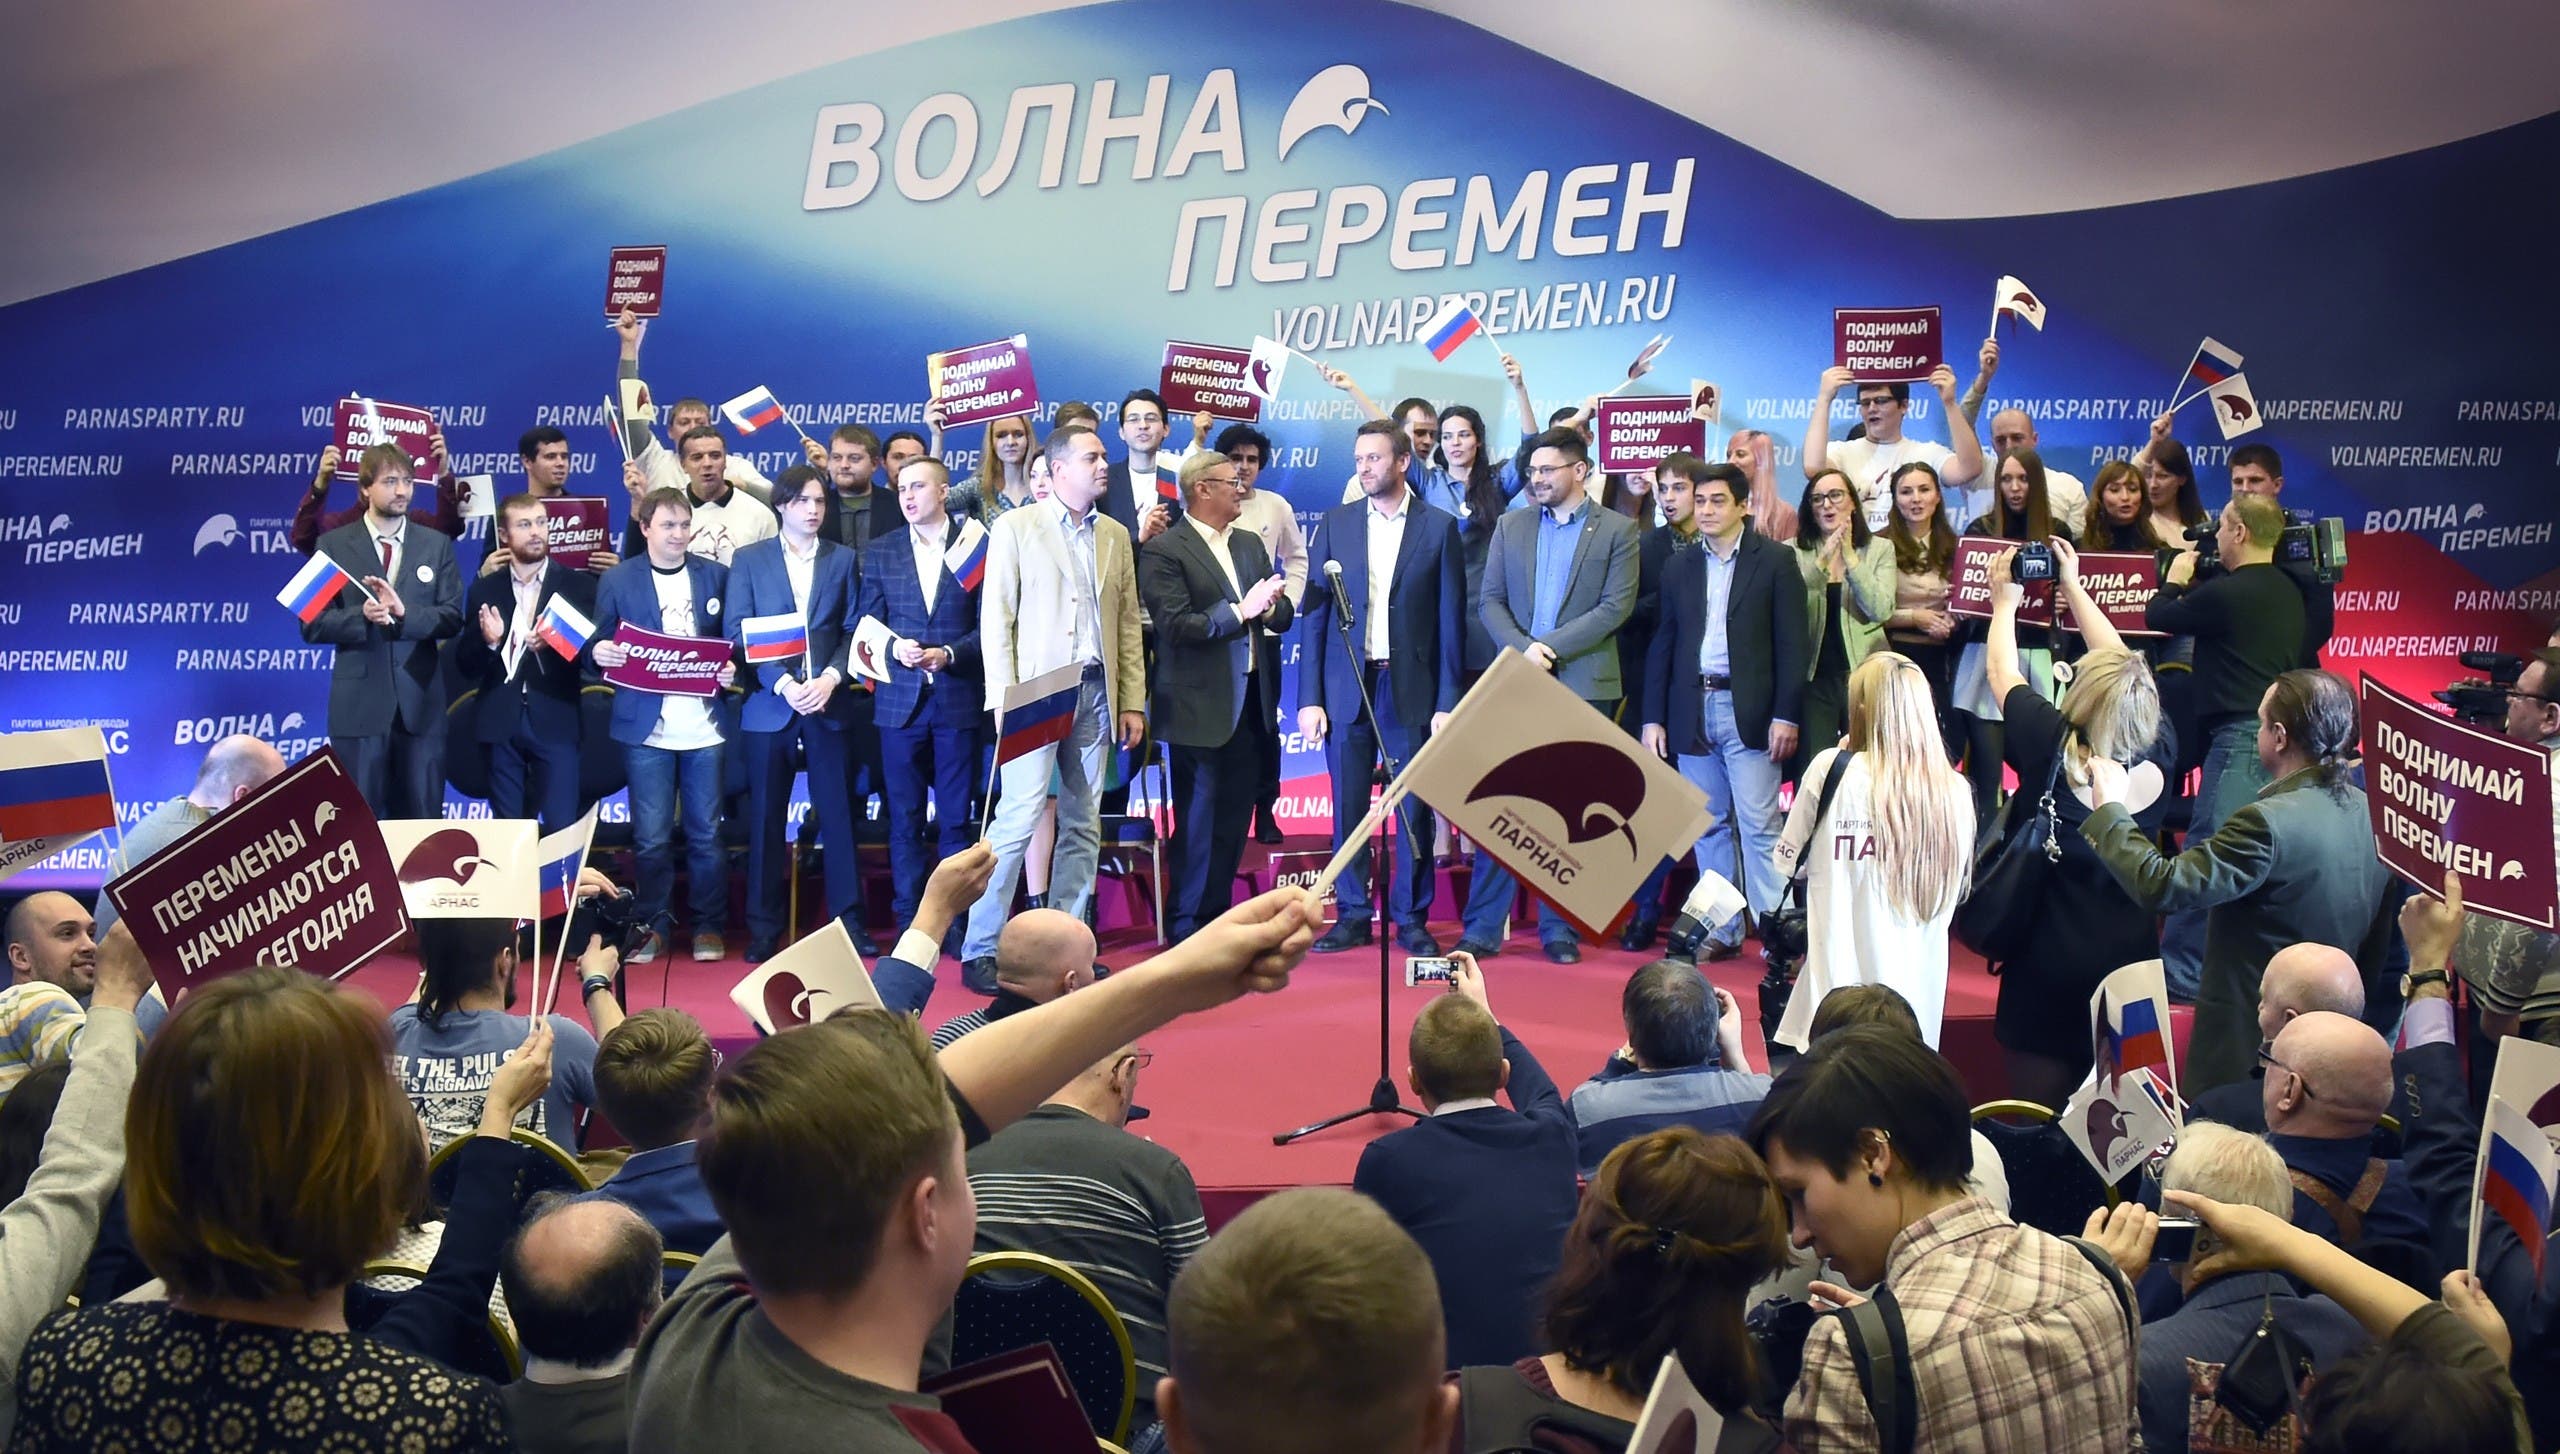 تجمع للمعارضة الروسية في موسكو في 2016 ويظهر في الصورة نافالني وكاسيانوف 